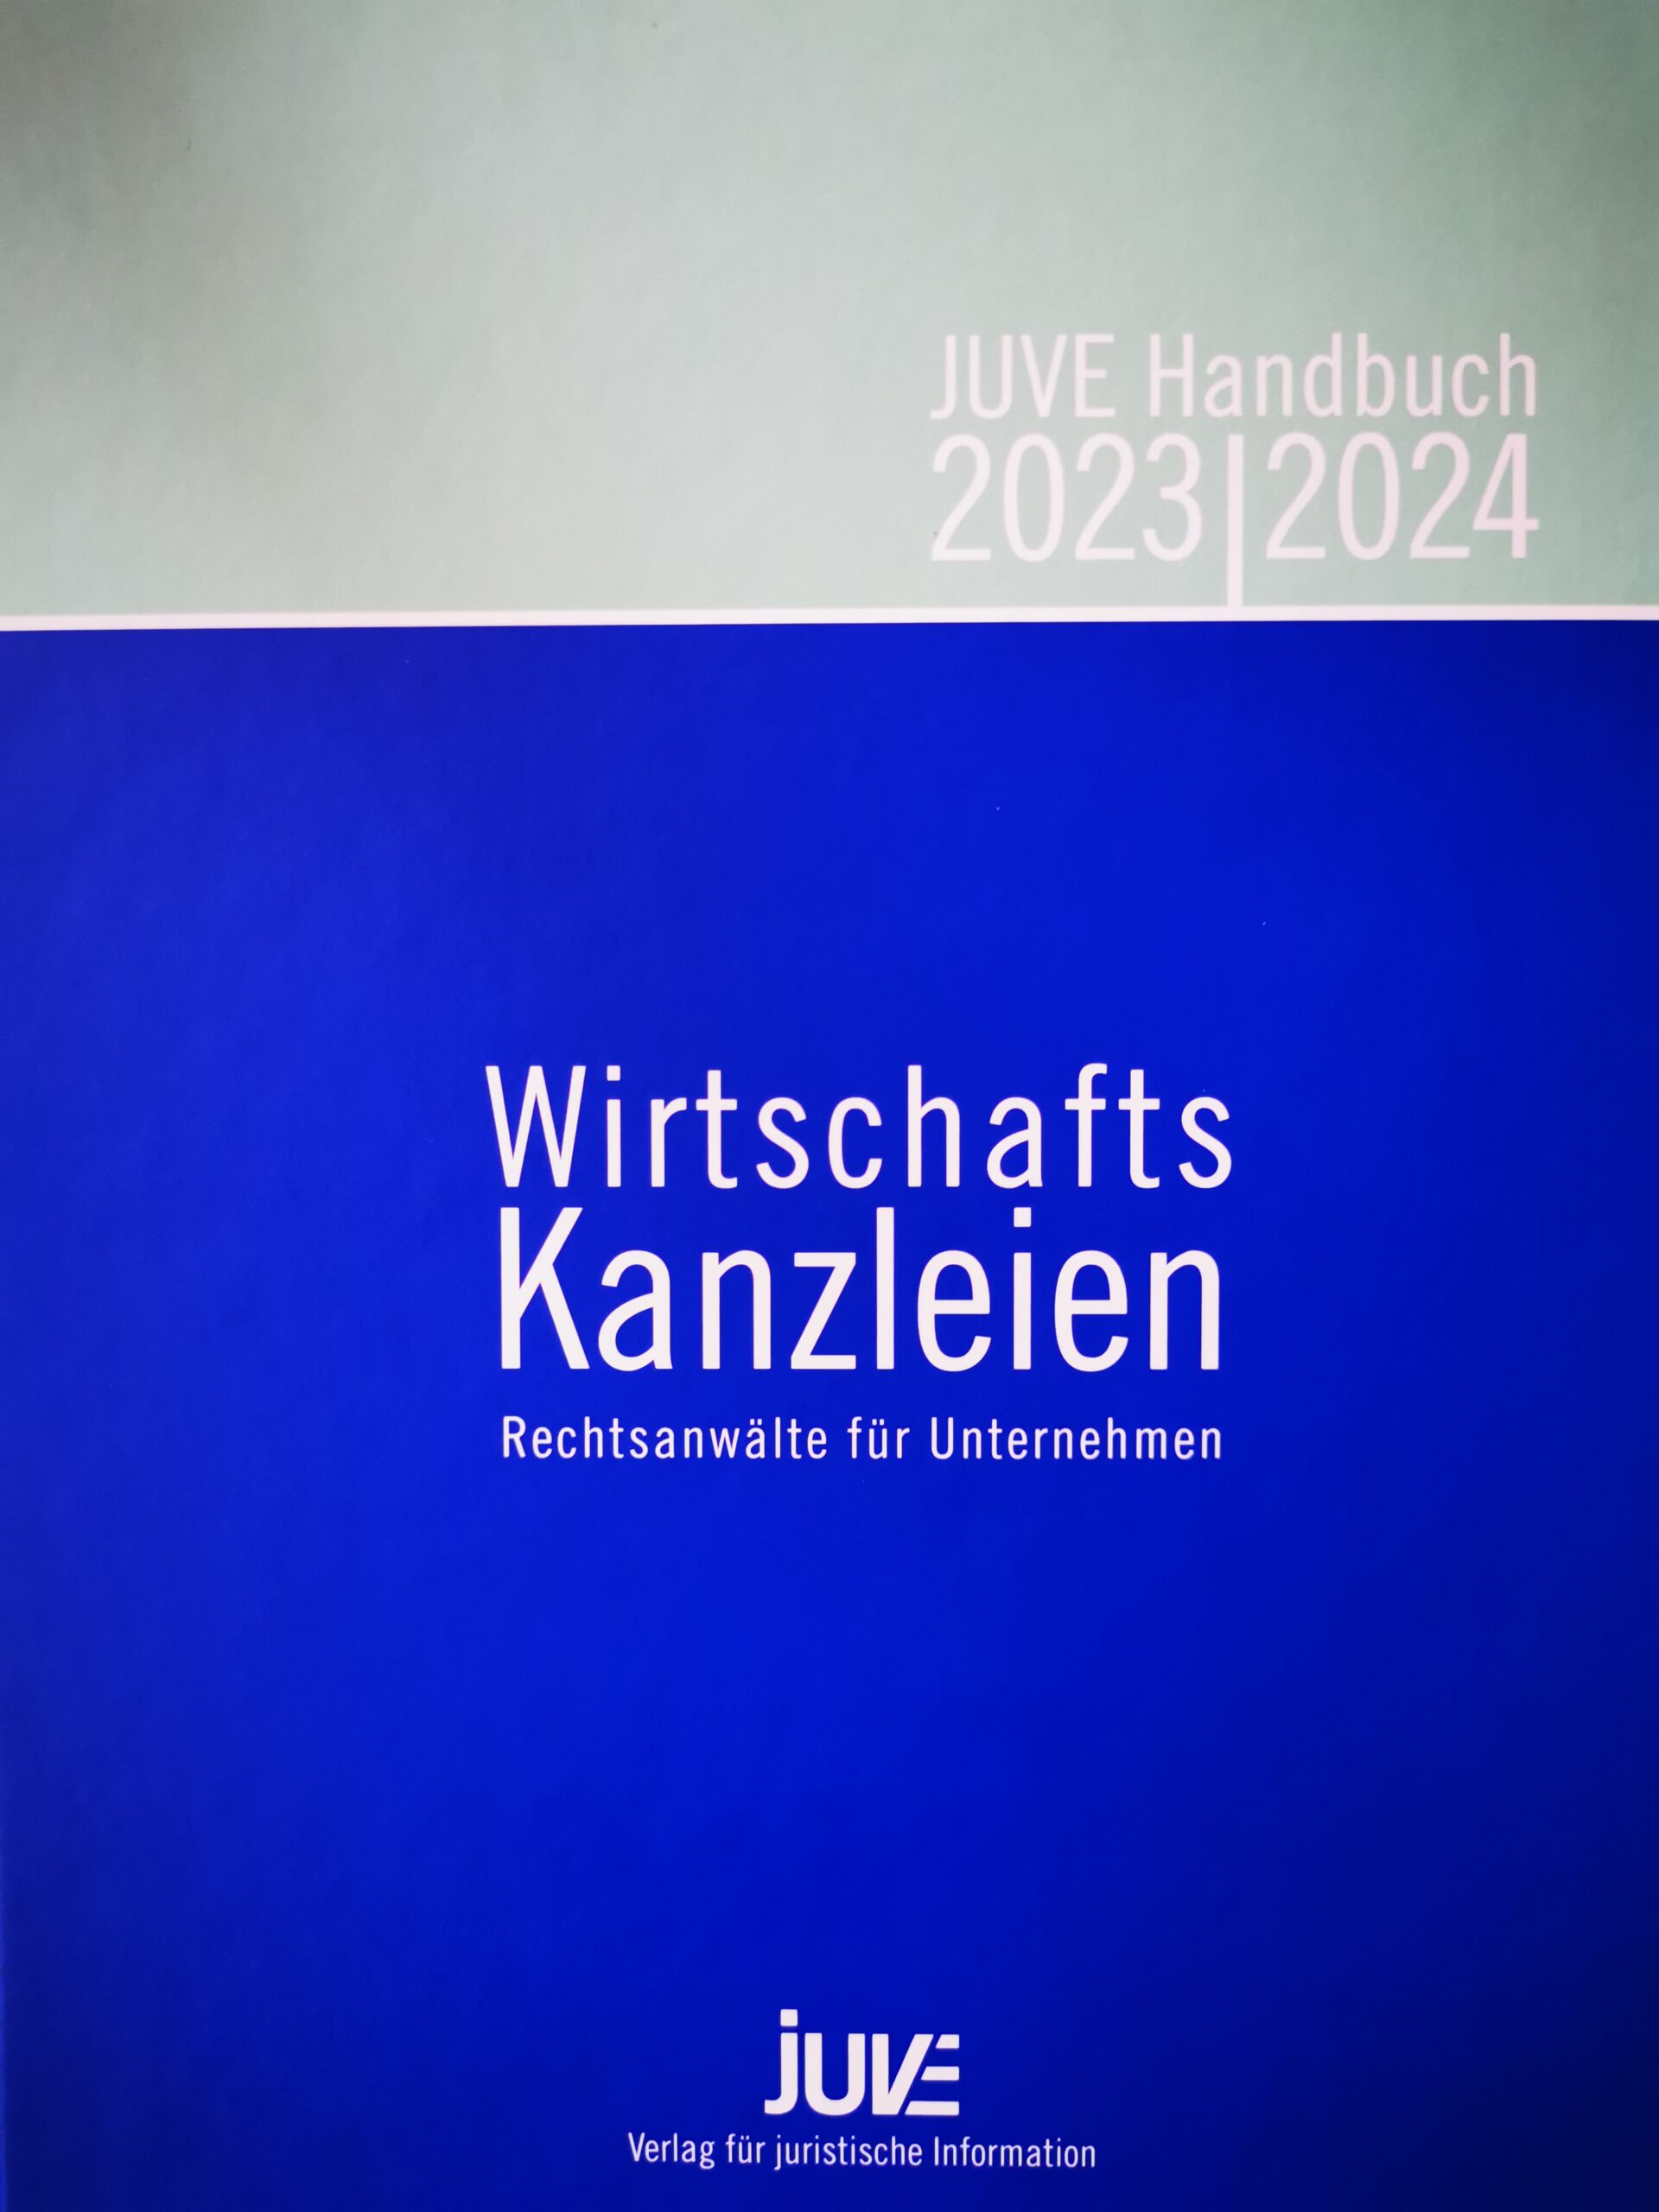 Juve Handbuch